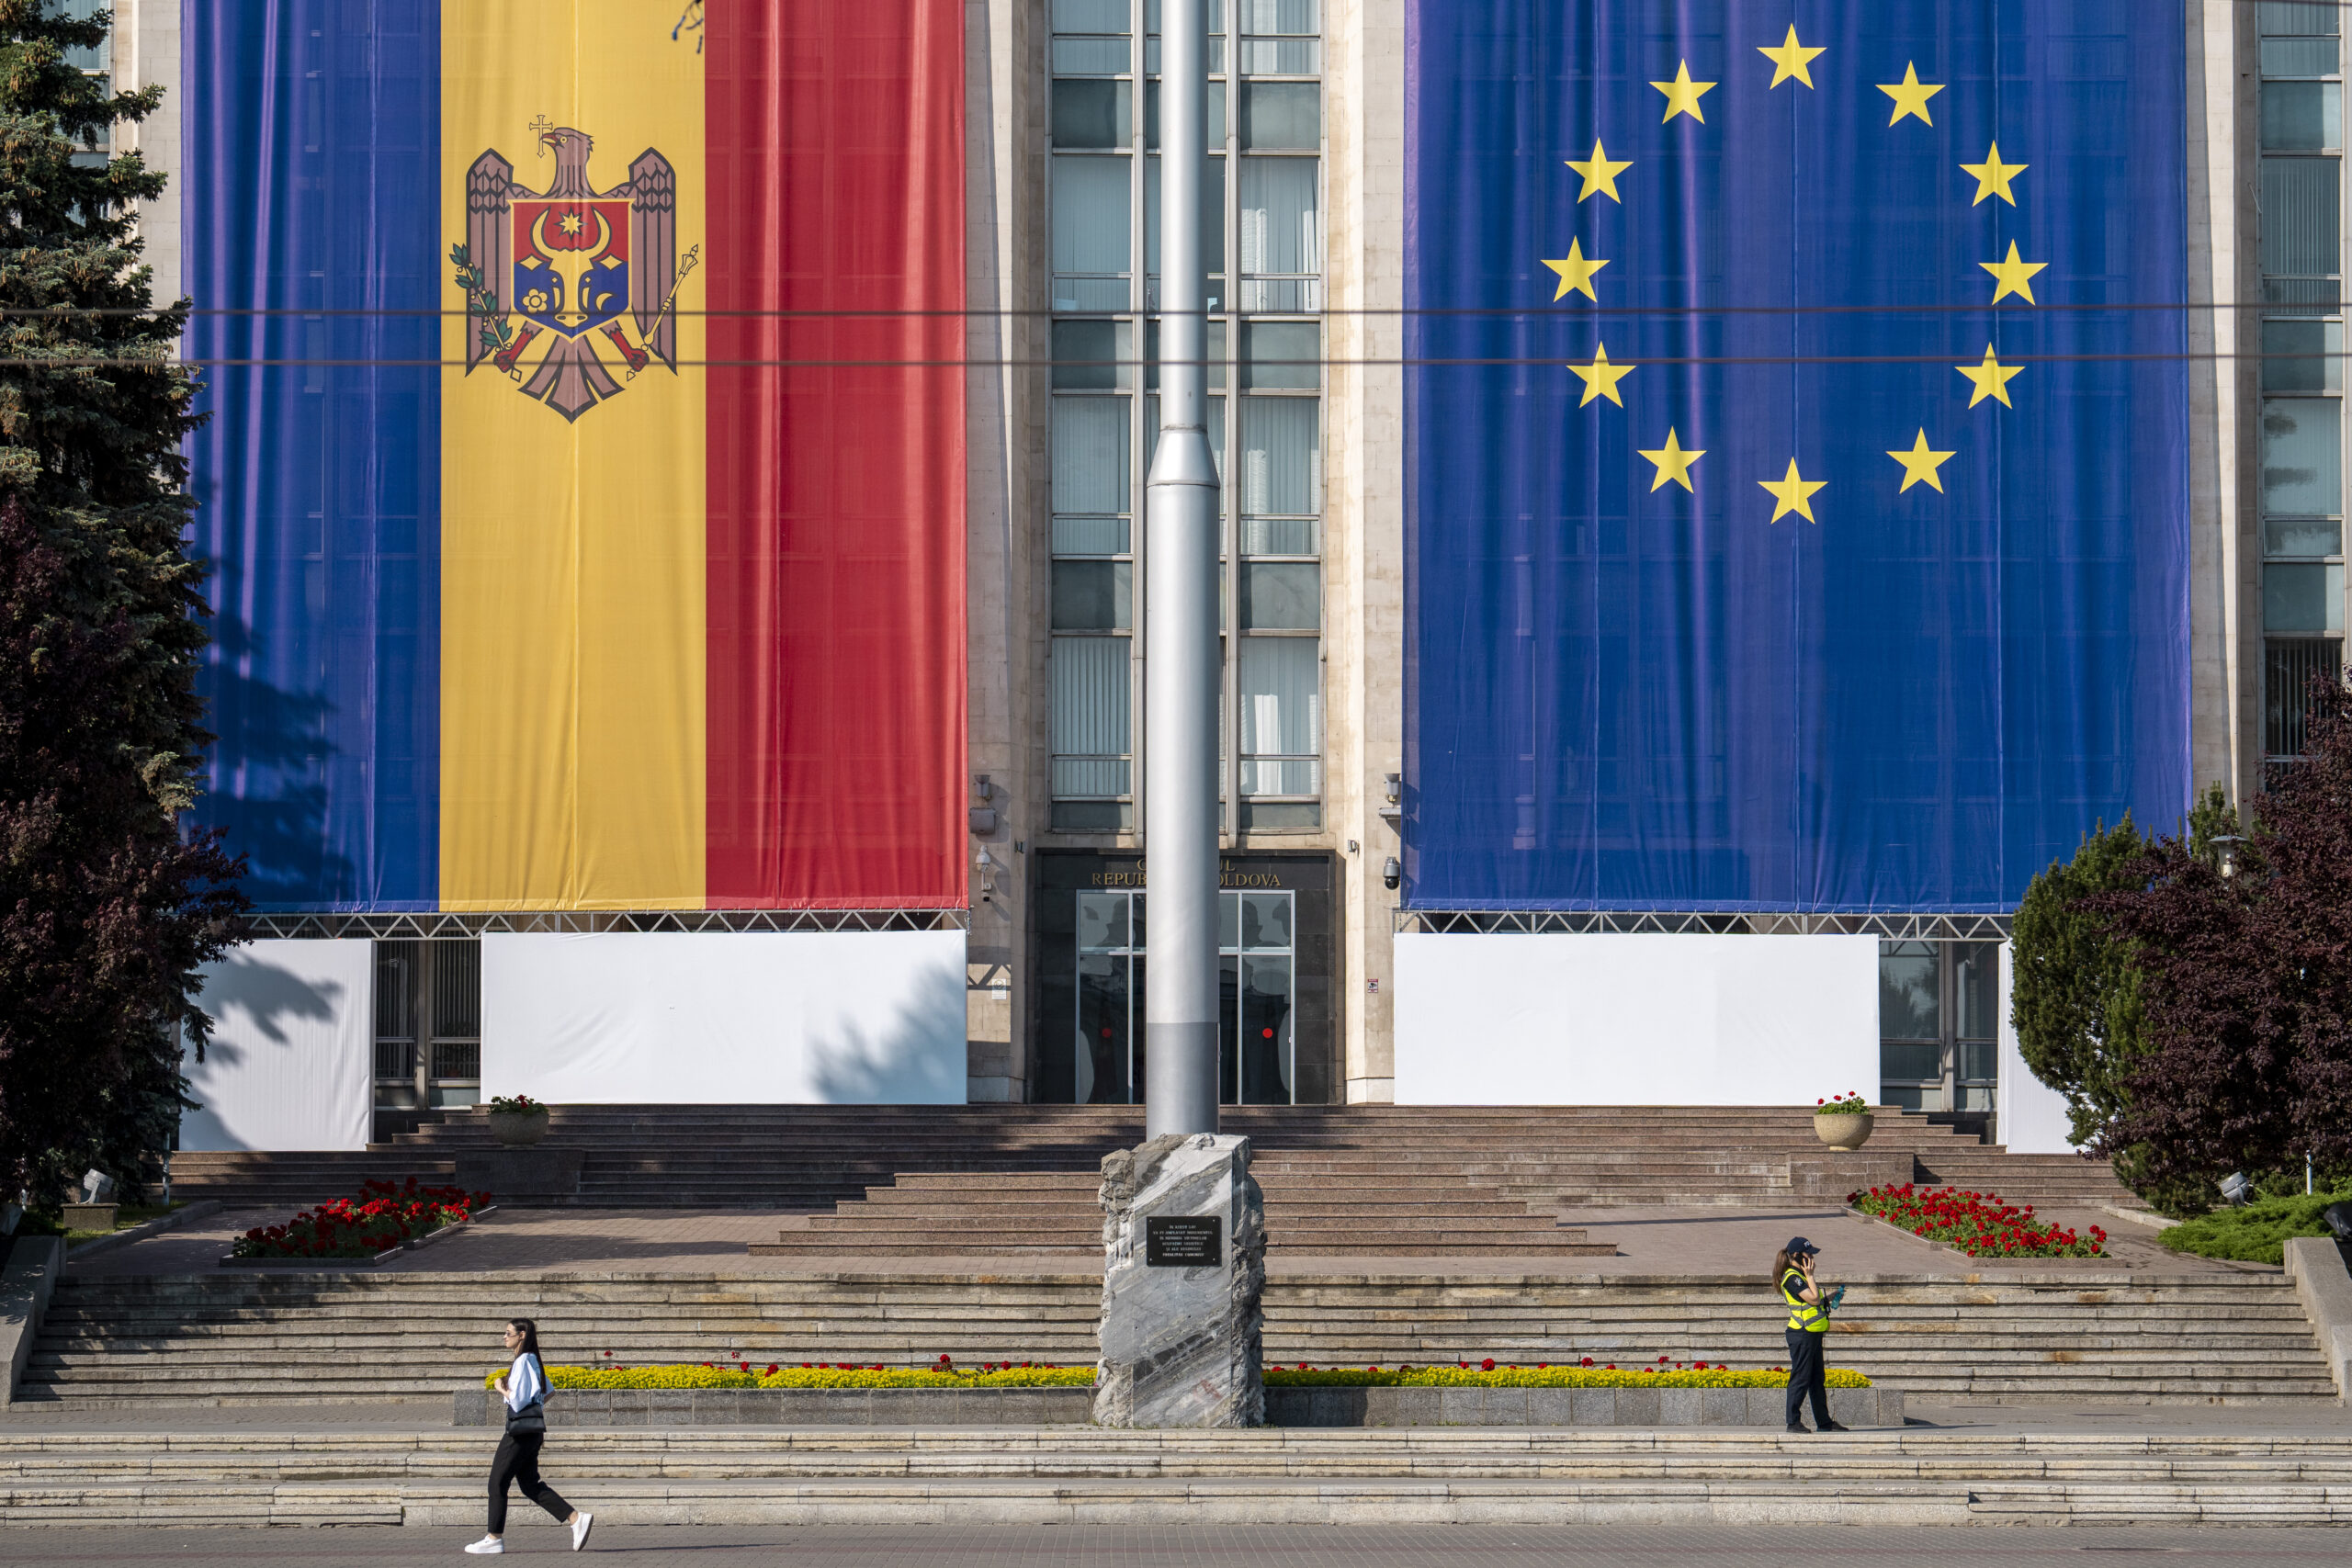 μολδαβία-σύνοδος-των-ευρωπαίων-στην-562450921